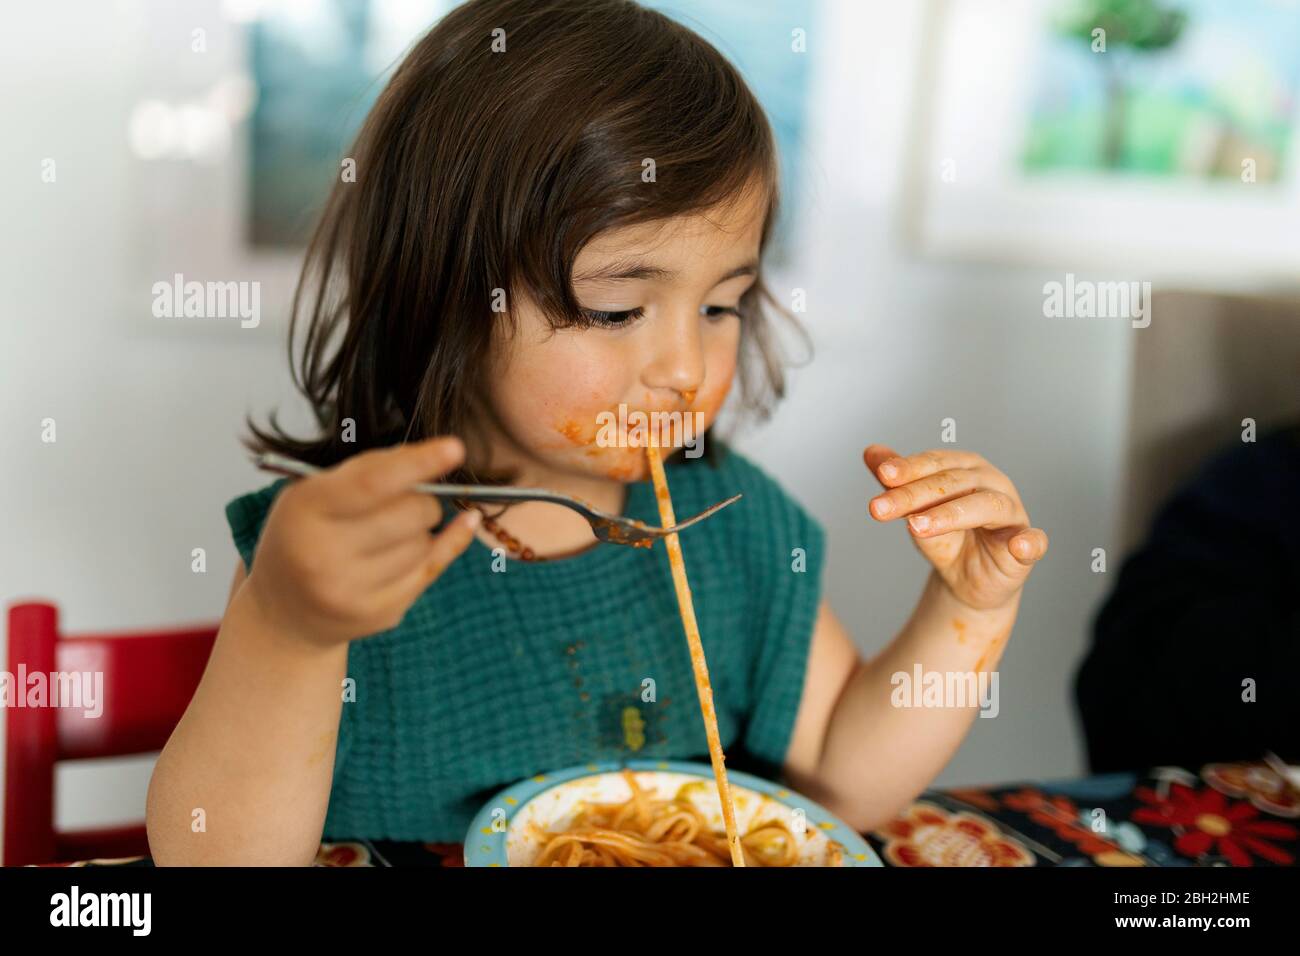 Portrait von kleinen Mädchen mit verschmiertem Gesicht essen Pasta Stockfoto